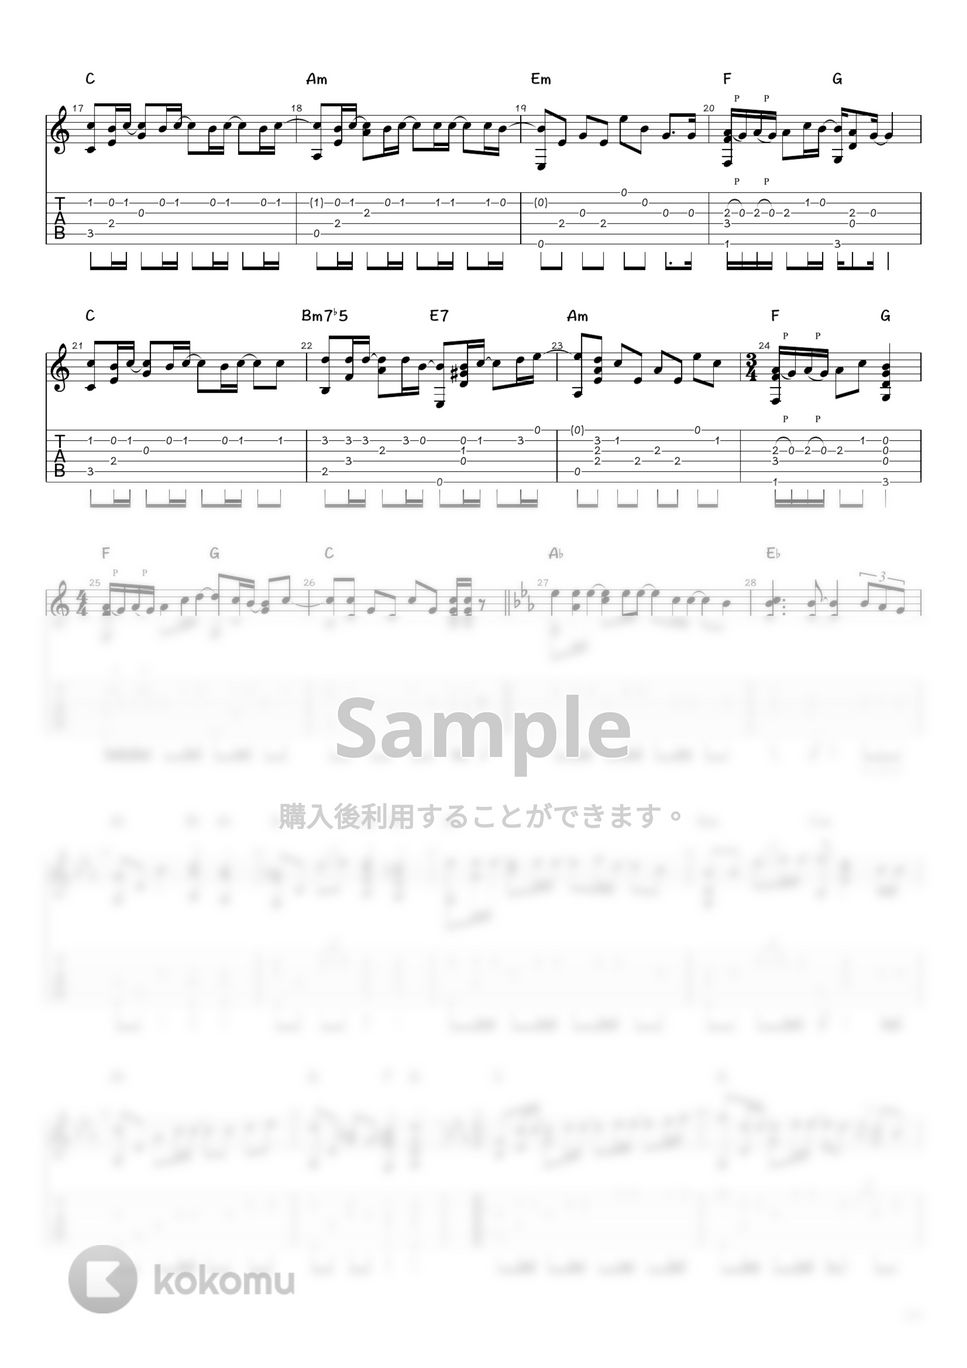 コブクロ - 桜 (ソロギター / タブ譜) by 井上さとみ